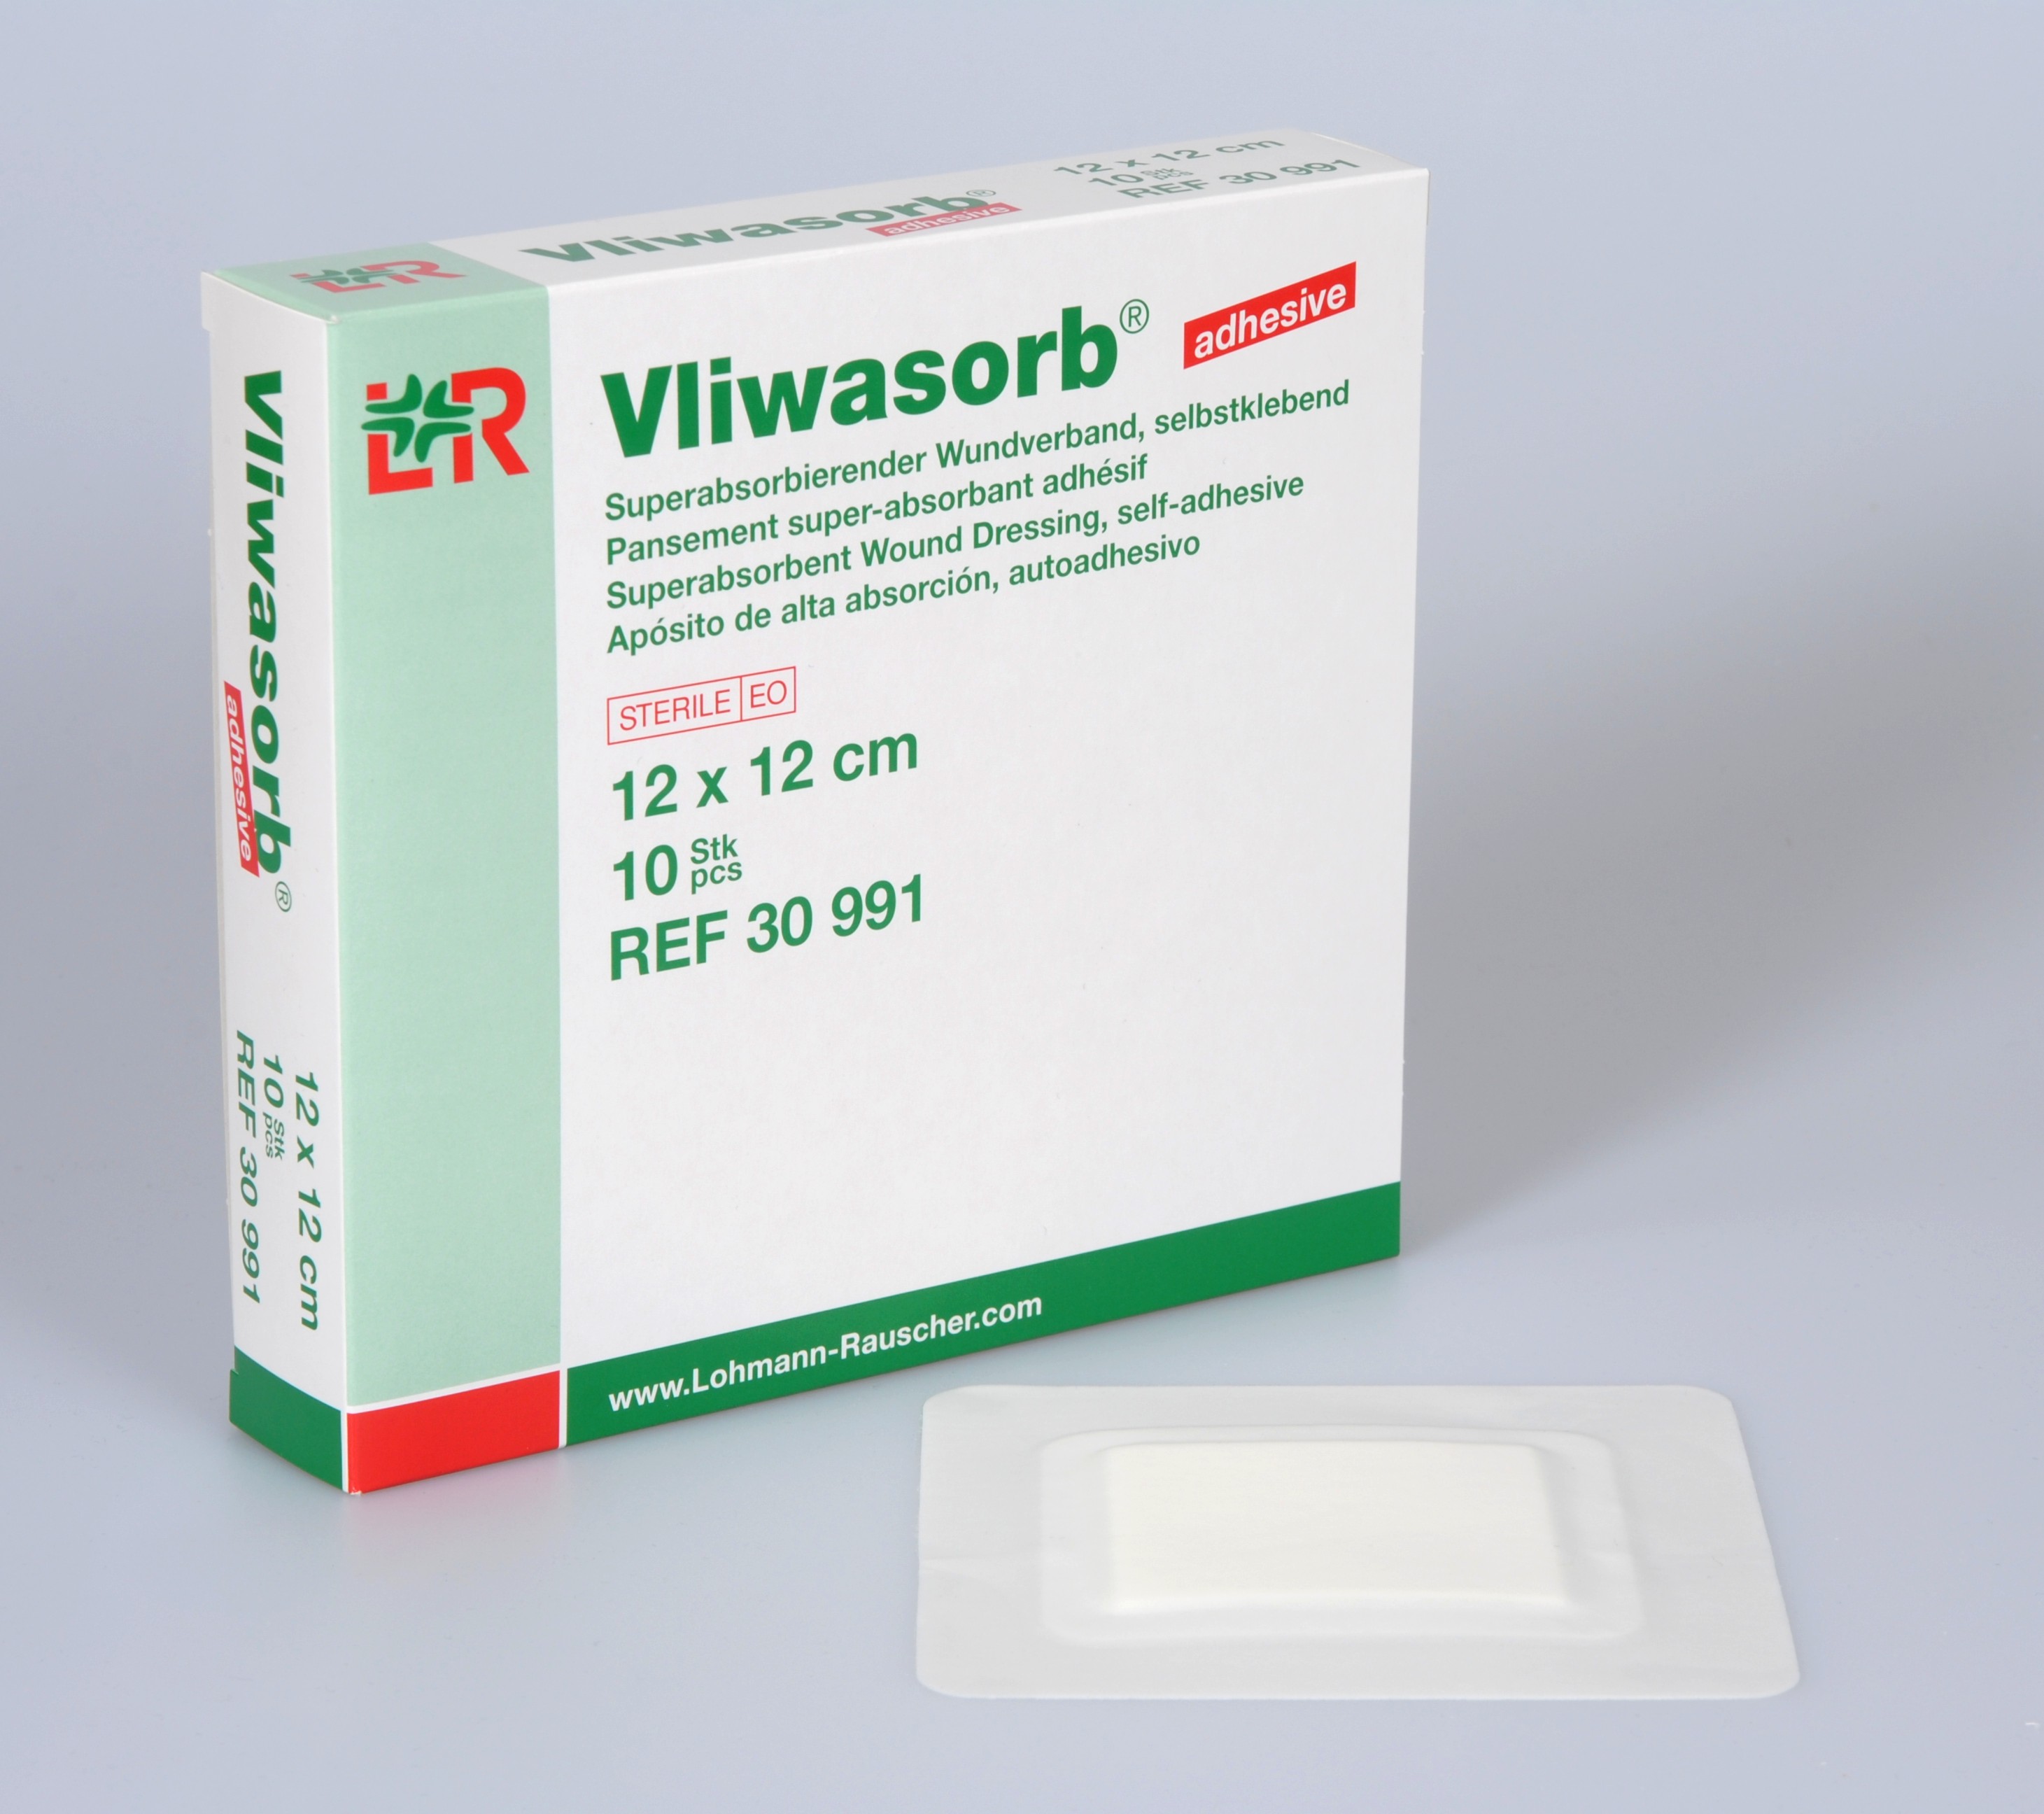 Vliwasorb adhesive 15x25cm, steril, 10 Stck., PZN 09888458